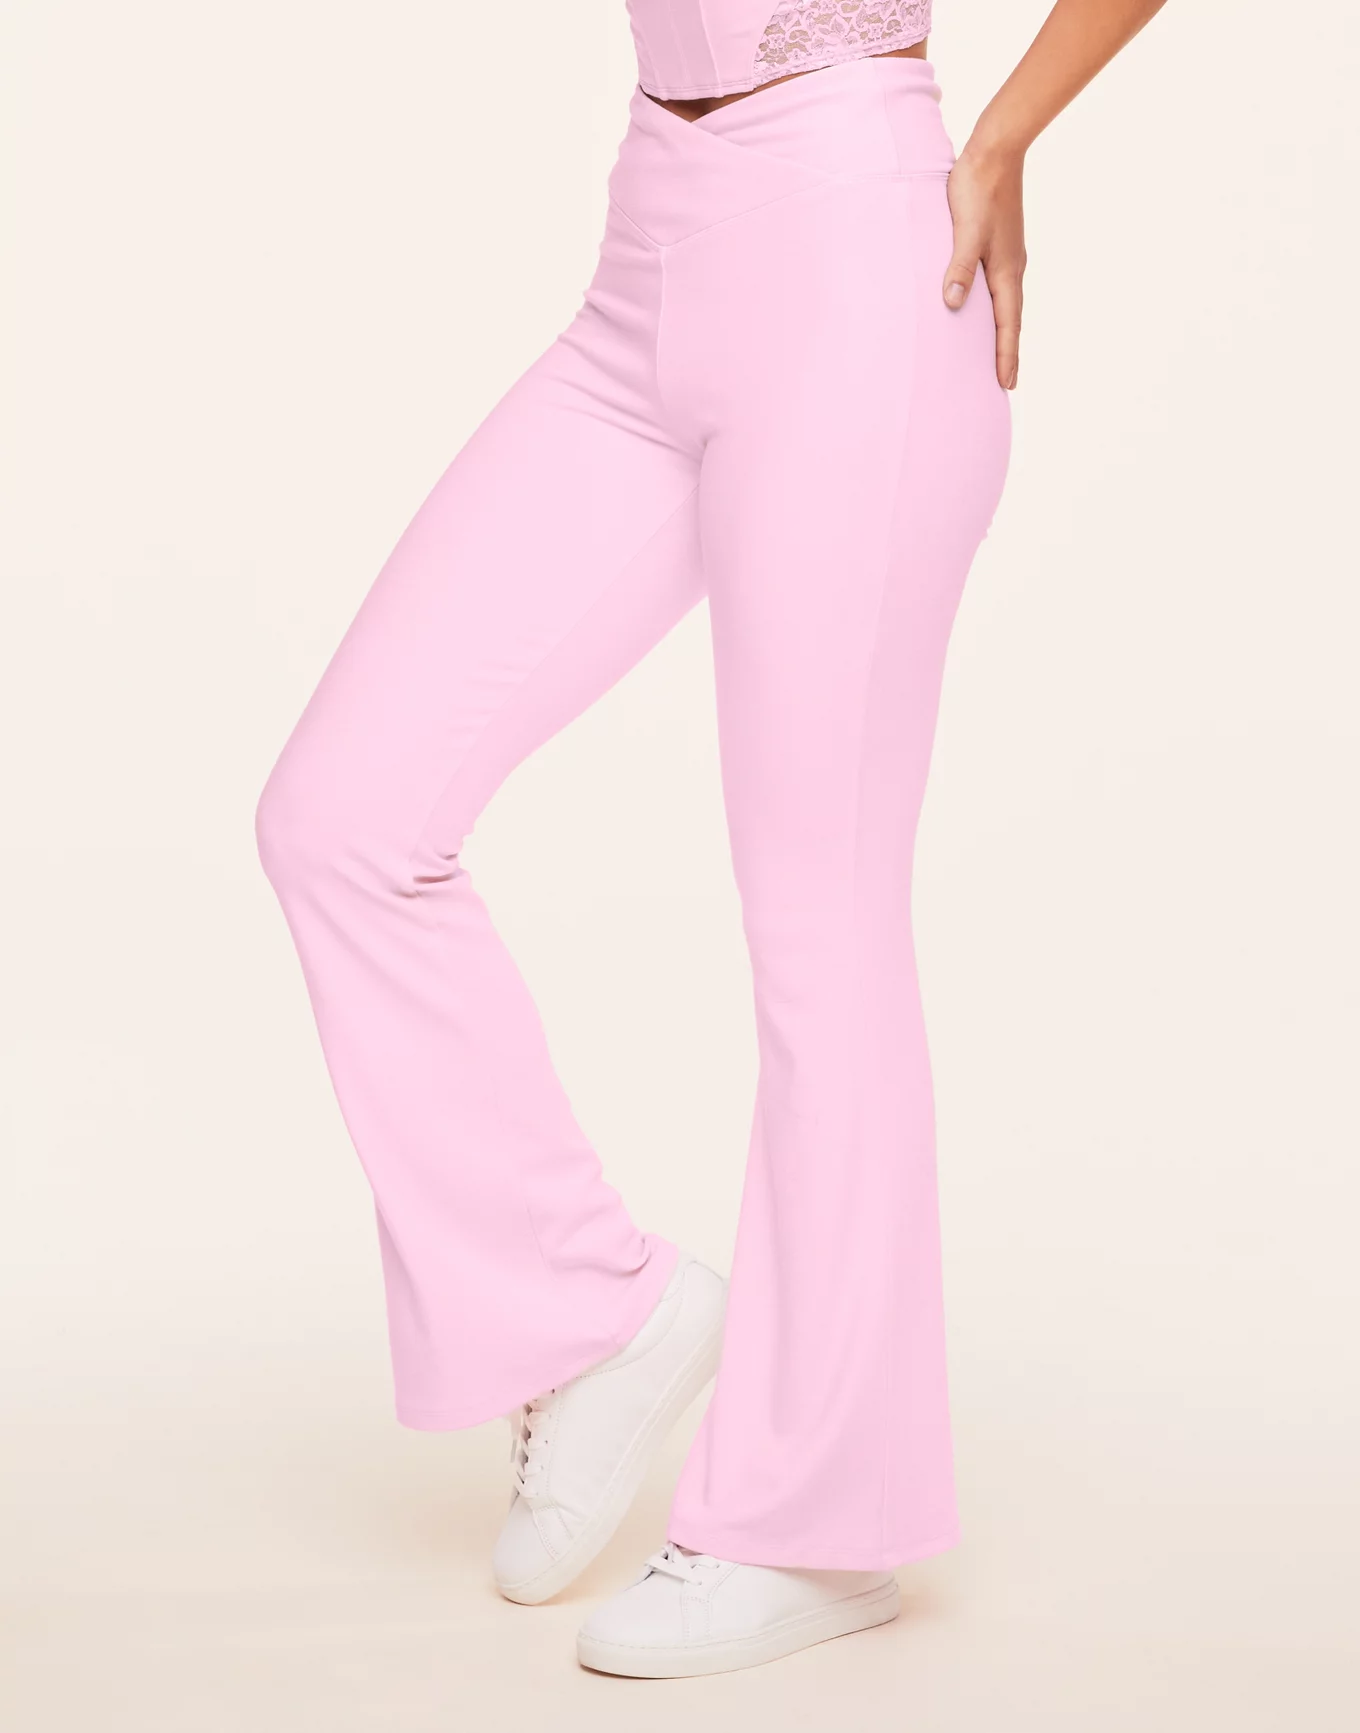 Victoria’s Secret Pink Flare Yoga Pants Size M